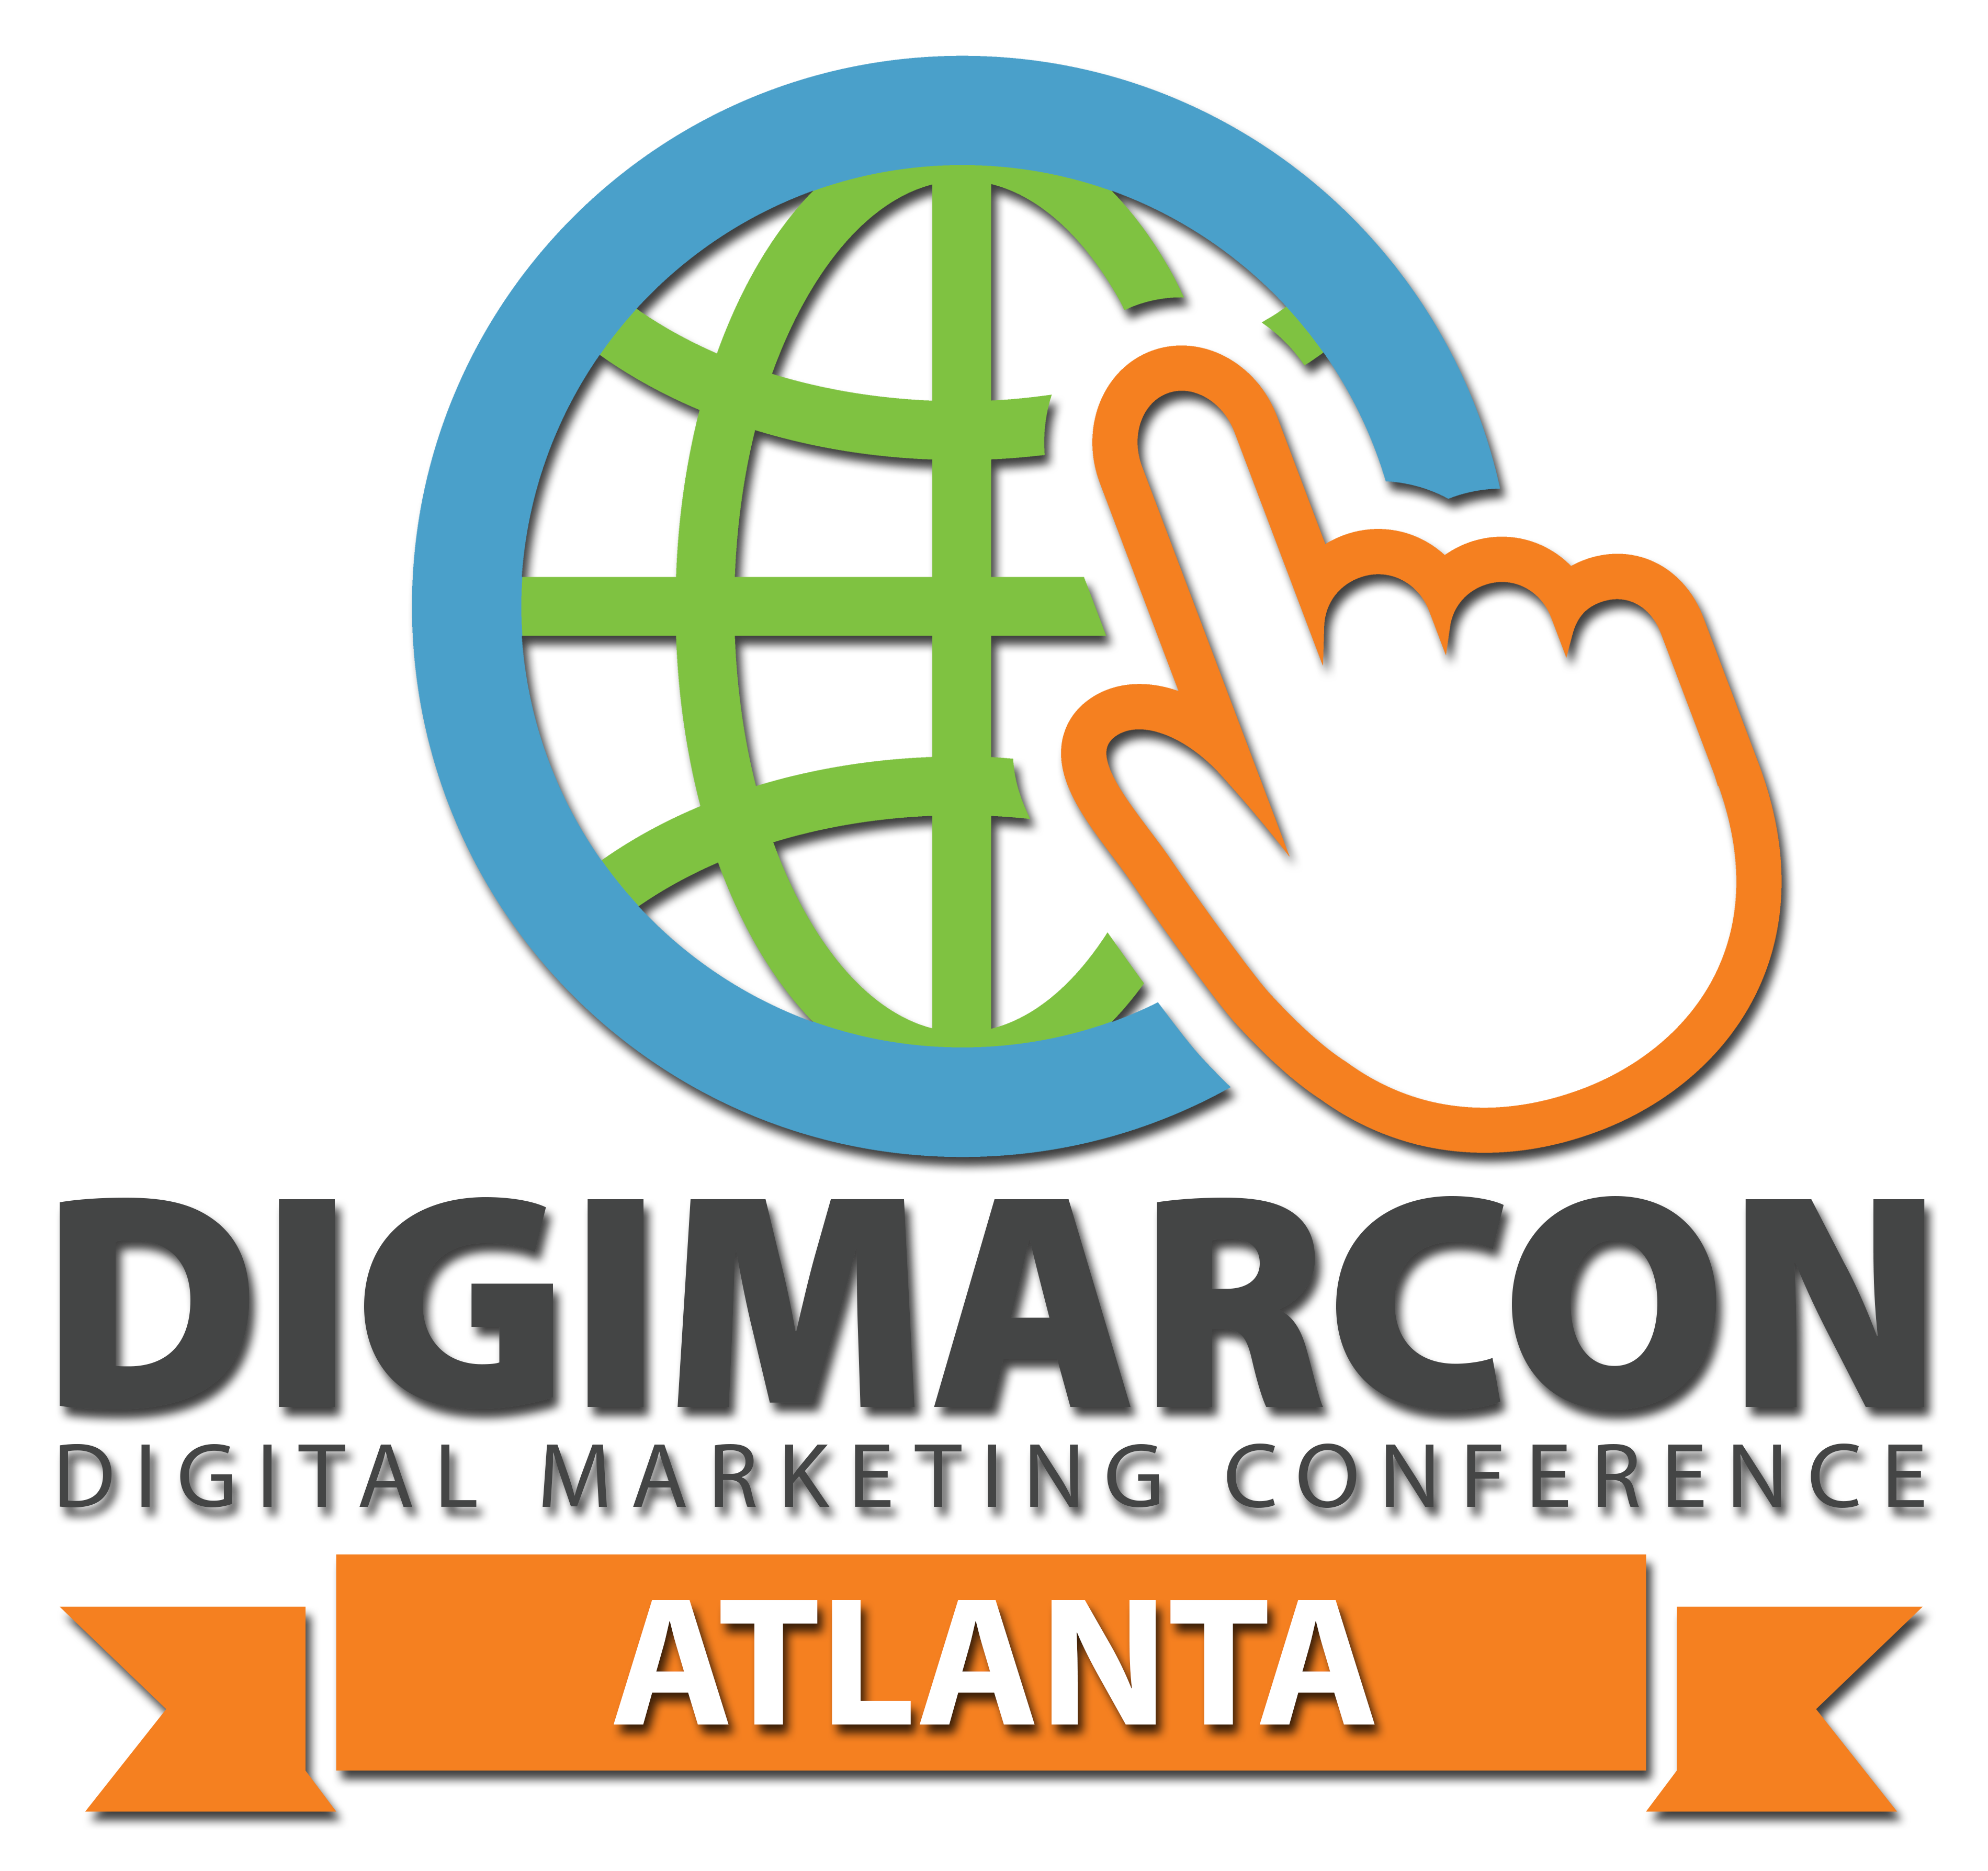 DigiMarCon Texas – Digital Marketing Conference & Exhibition